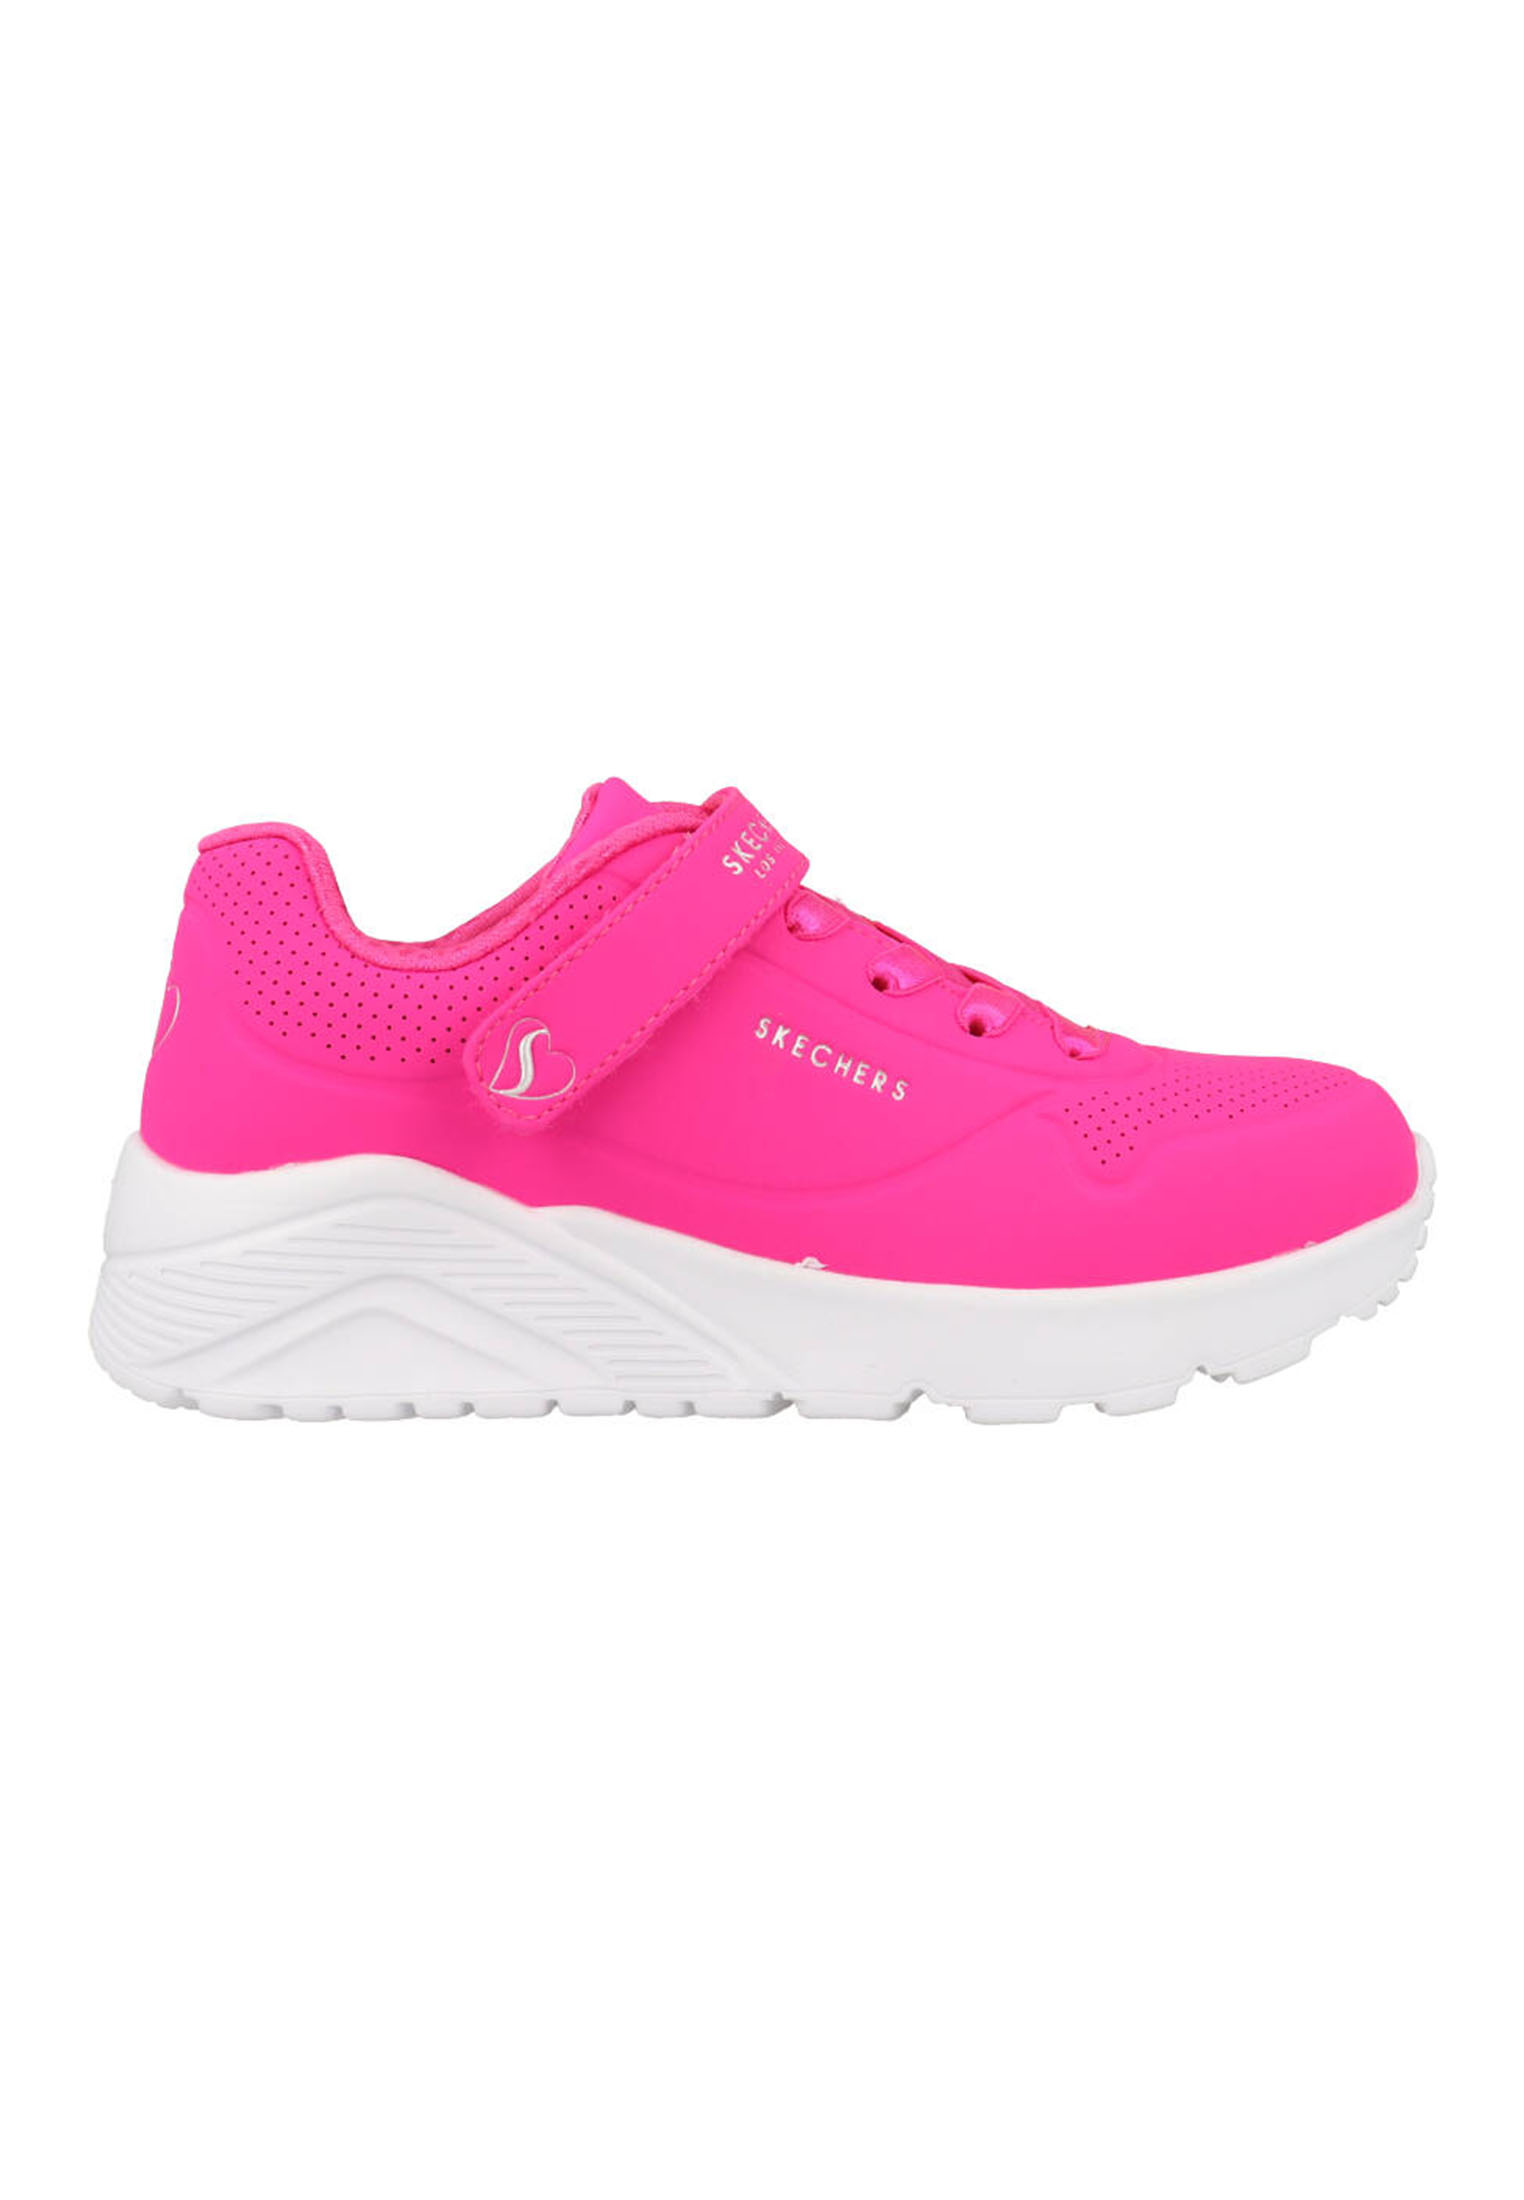 Skechers Uno Lite meisjes sneakers - Roze - Maat 30 - Extra comfort - Memory Foam